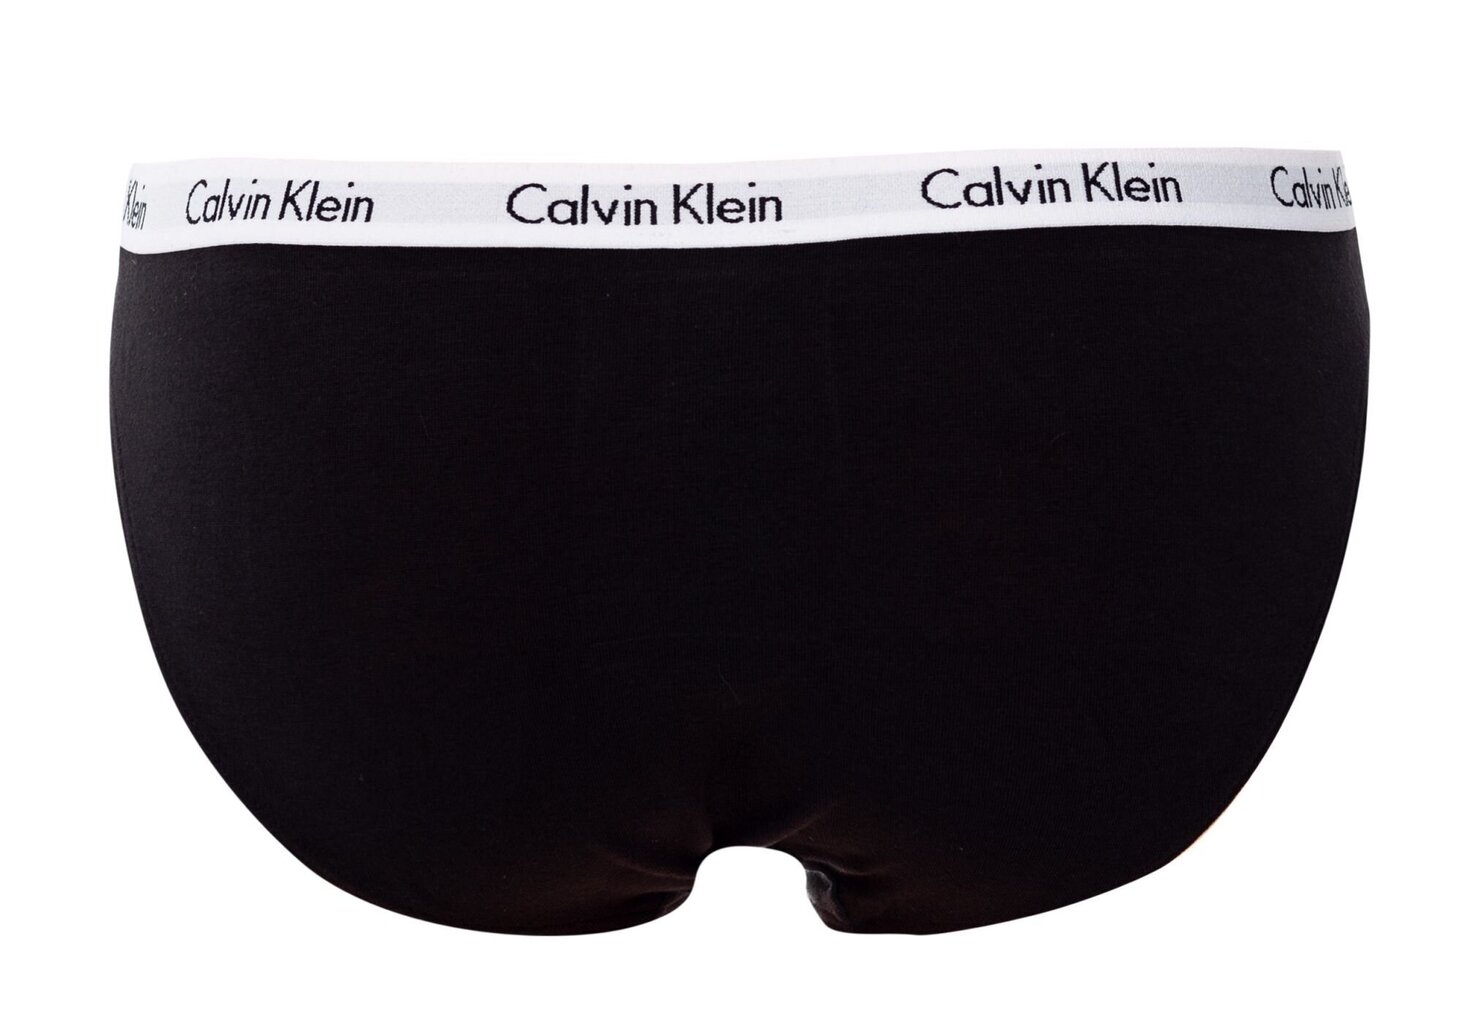 Biksītes-bikini sieviešu Calvin Klein Black D1618E 001 30107 cena un informācija | Sieviešu biksītes | 220.lv